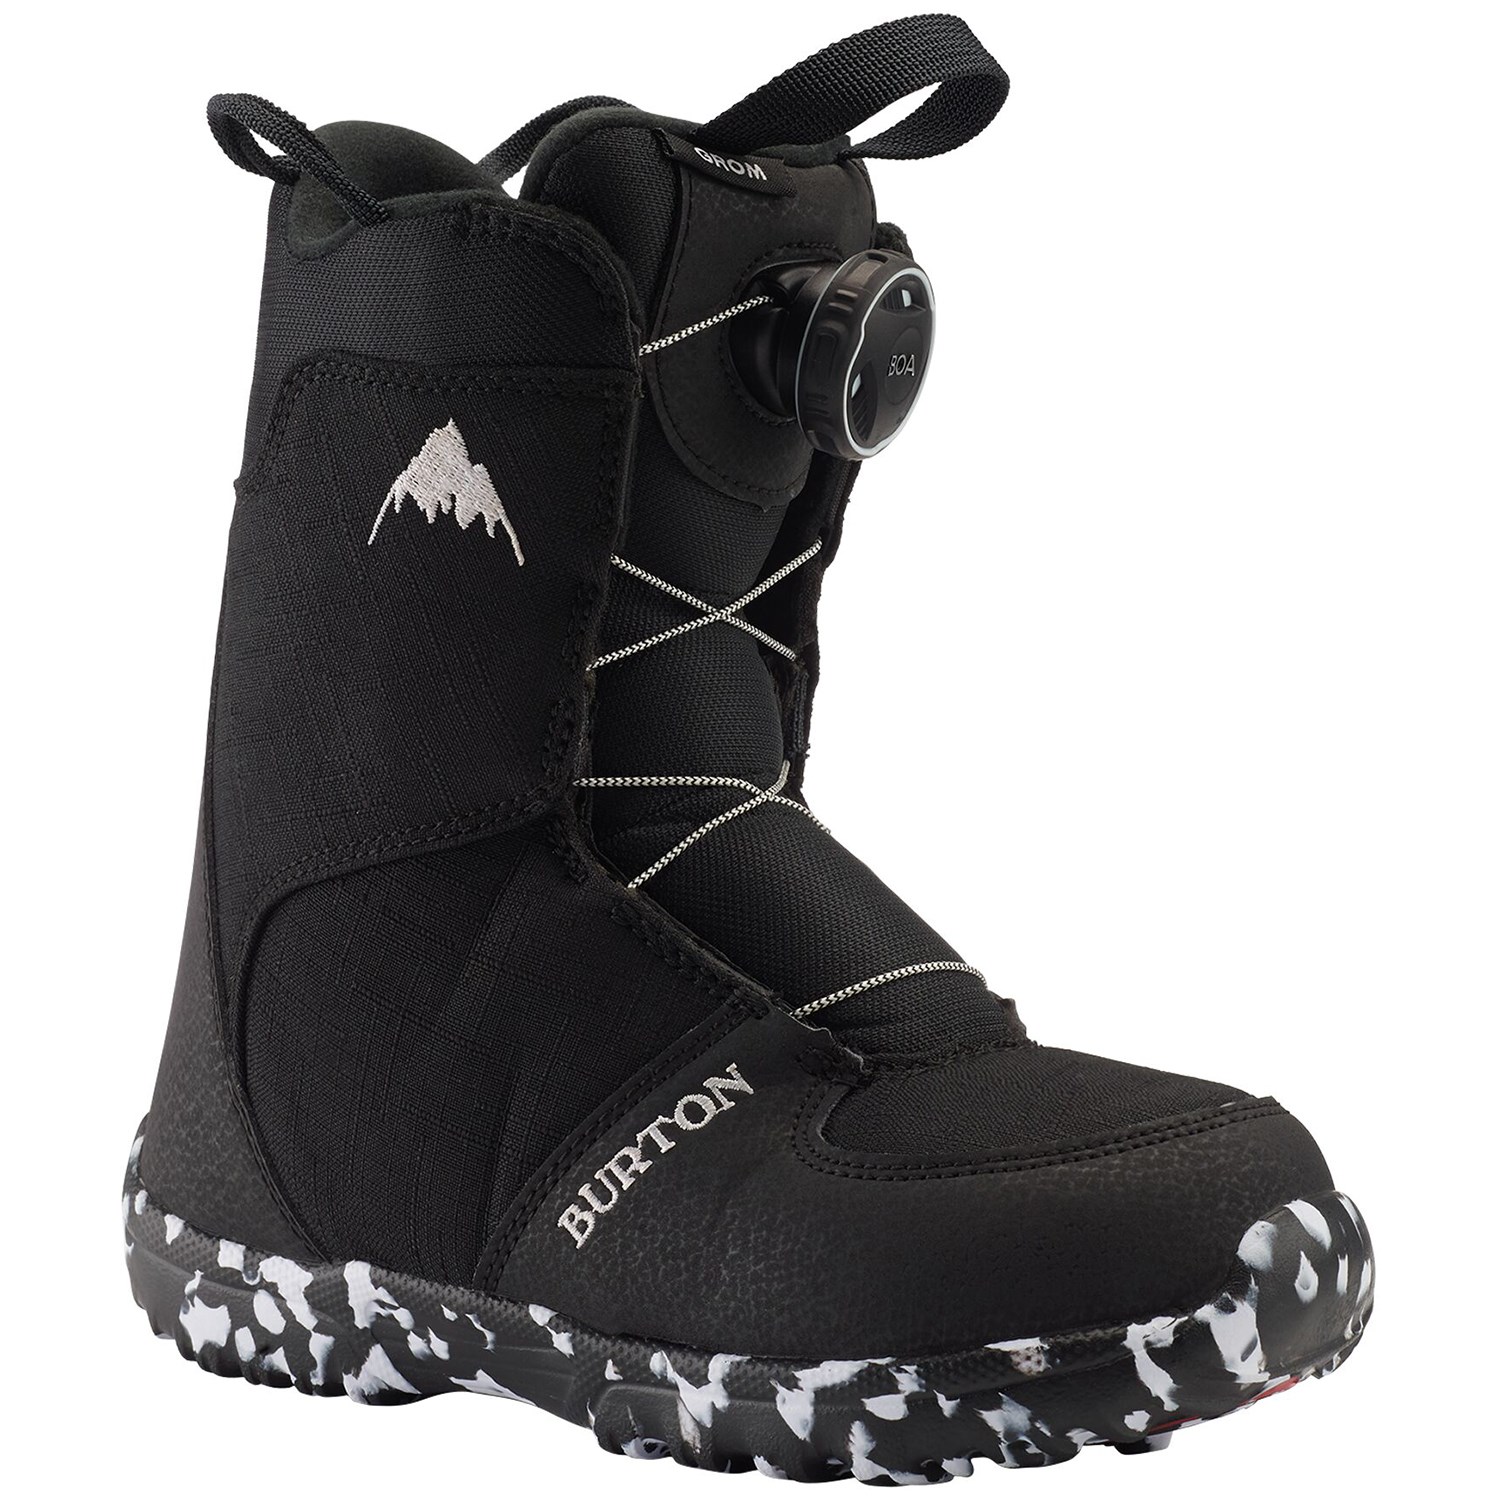 Ботинки Burton Grom Boa для сноуборда, черный детские сноубордические ботинки burton grom boa р 12c white